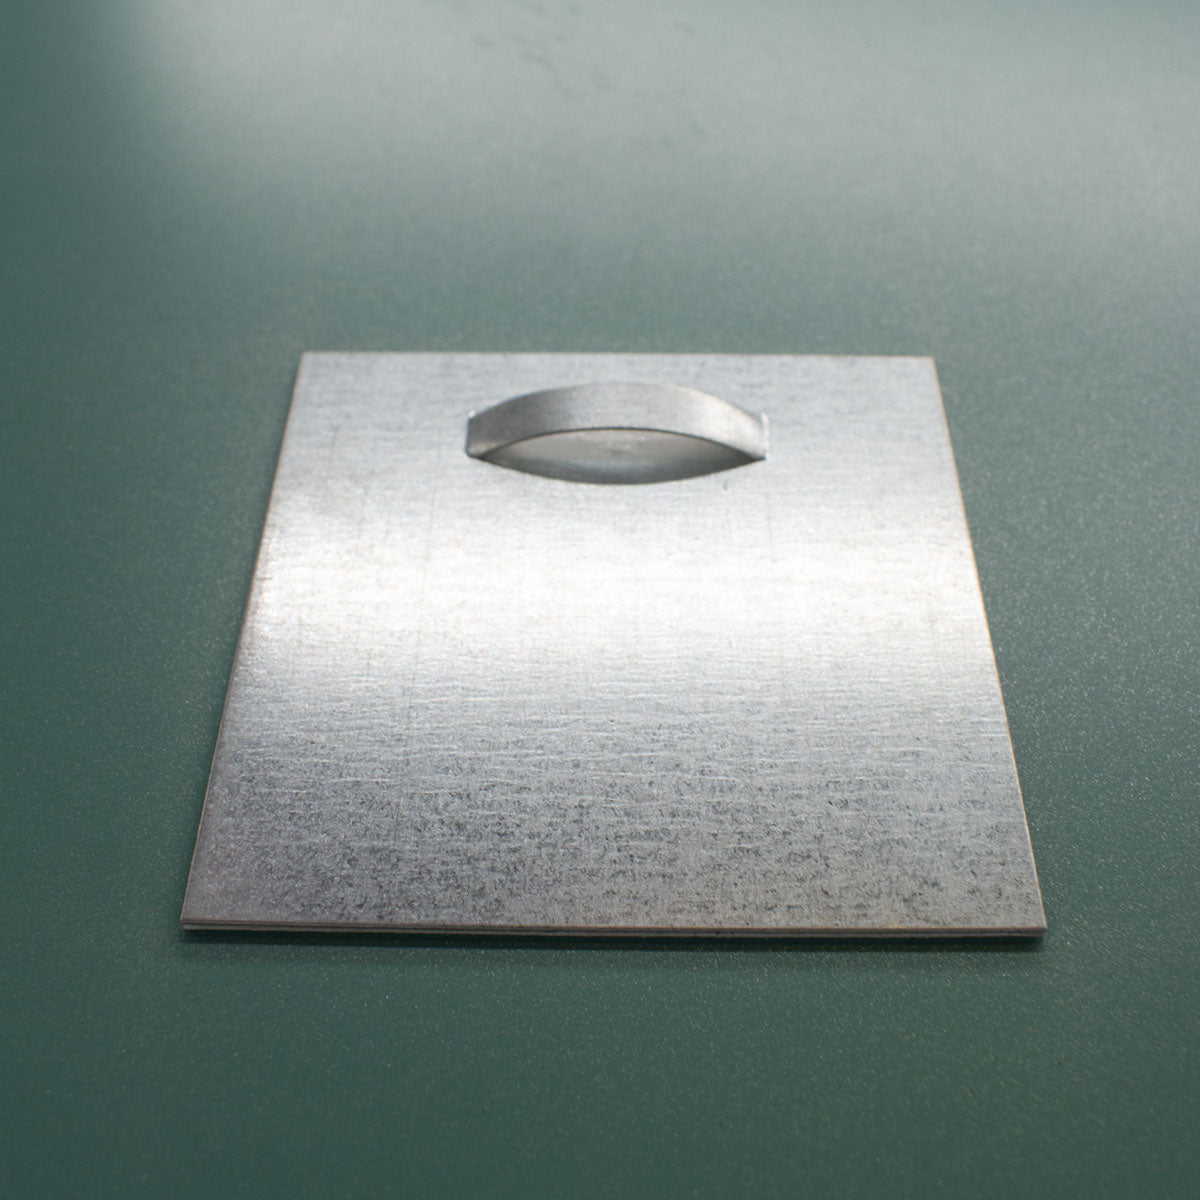 Spiegel rechteckig 'Er' | 60 x 90 x 0,4 cm | in verschiedenen Ausführungen | Manufactured in Europe